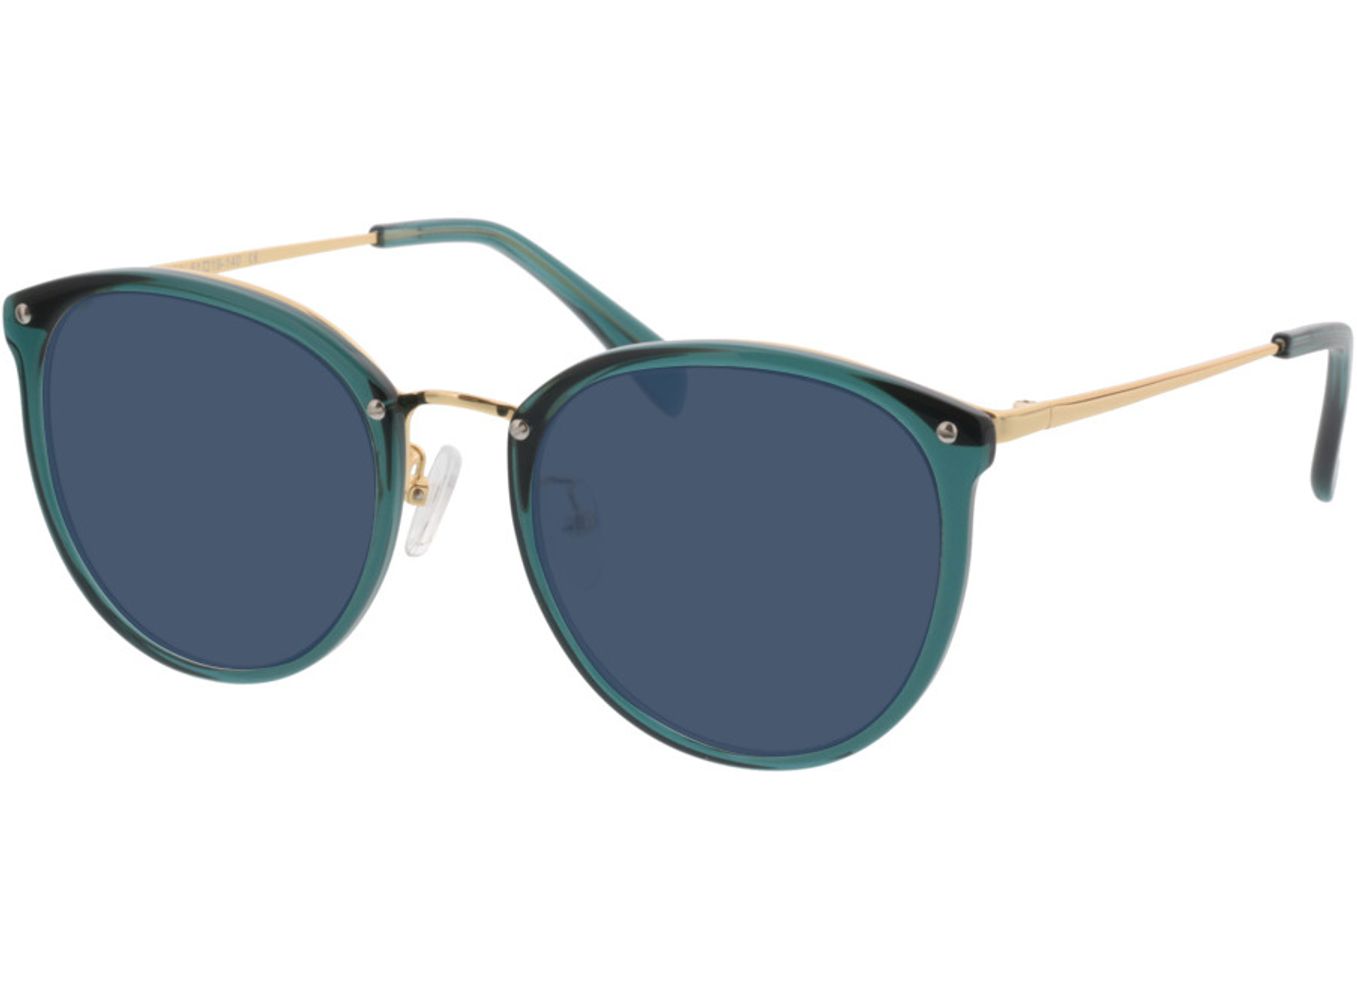 Charlotte - grün/gold Sonnenbrille ohne Sehstärke, Vollrand, Rund von Brille24 Collection